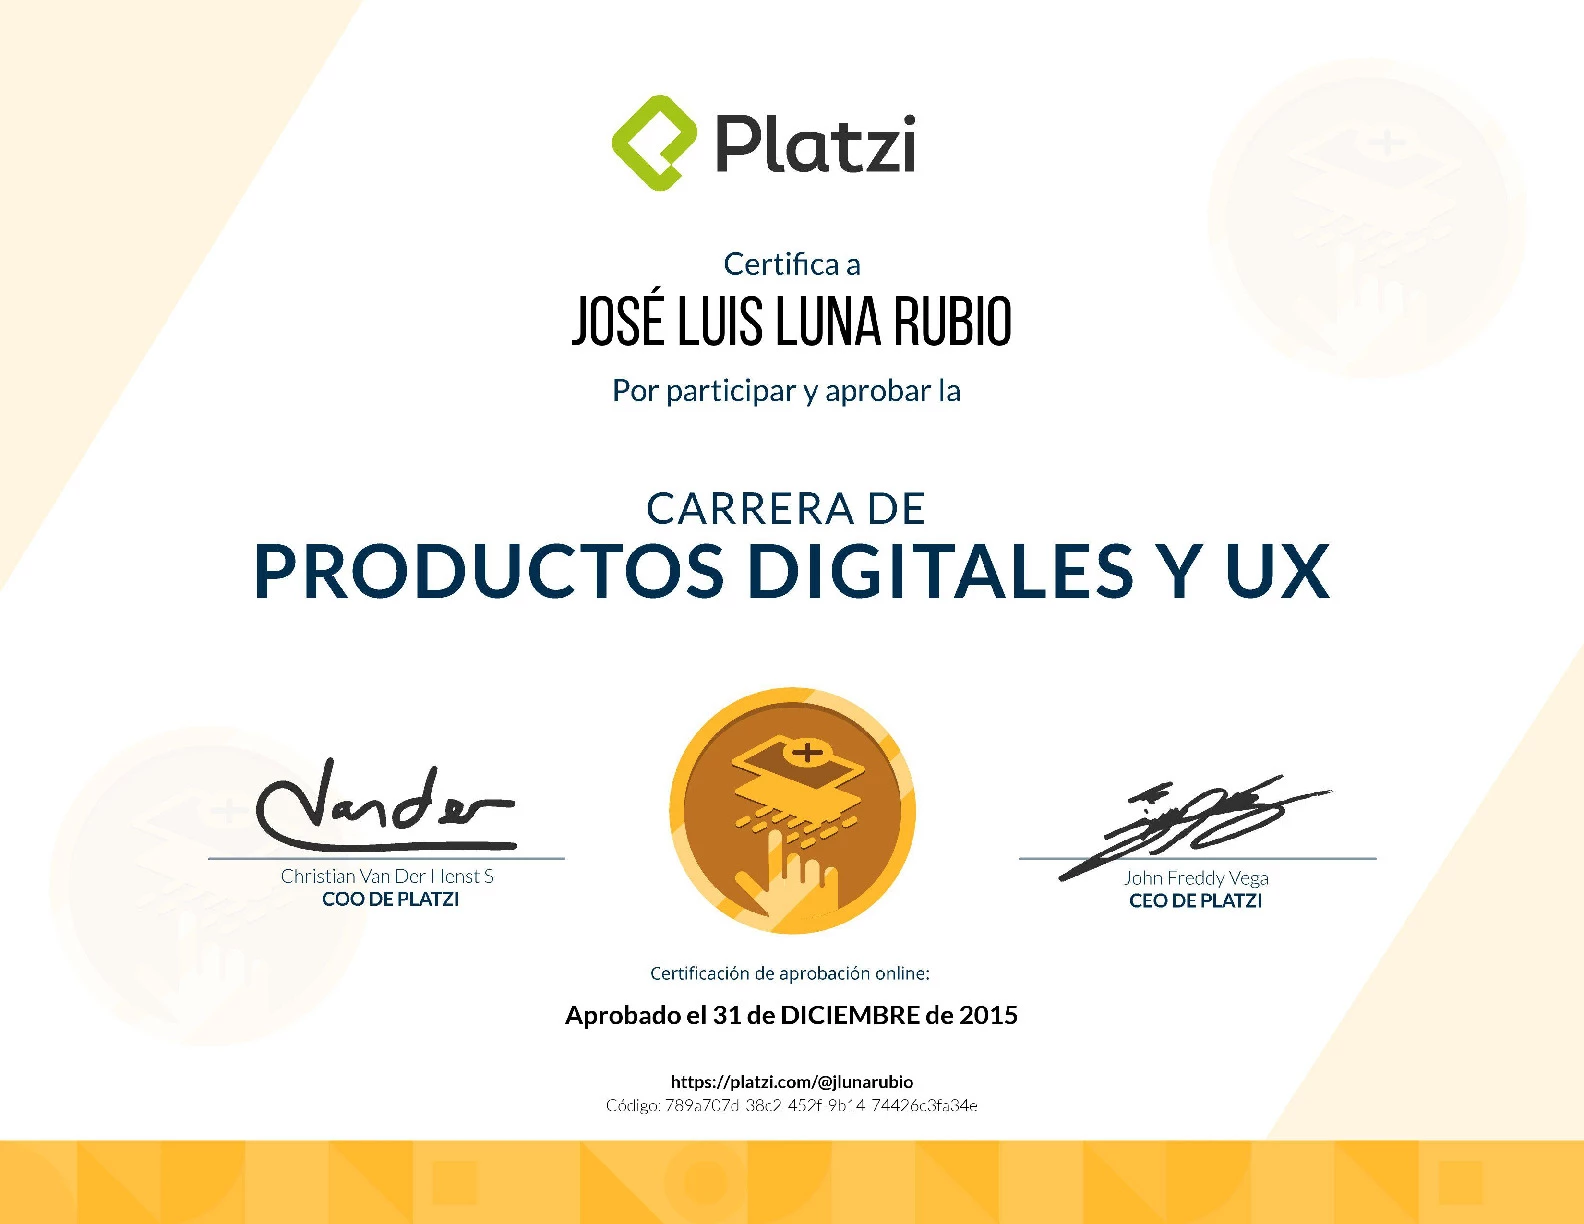 Carrera Platzi Jose Luis Luna Rubio - Productos Digitales  y UX